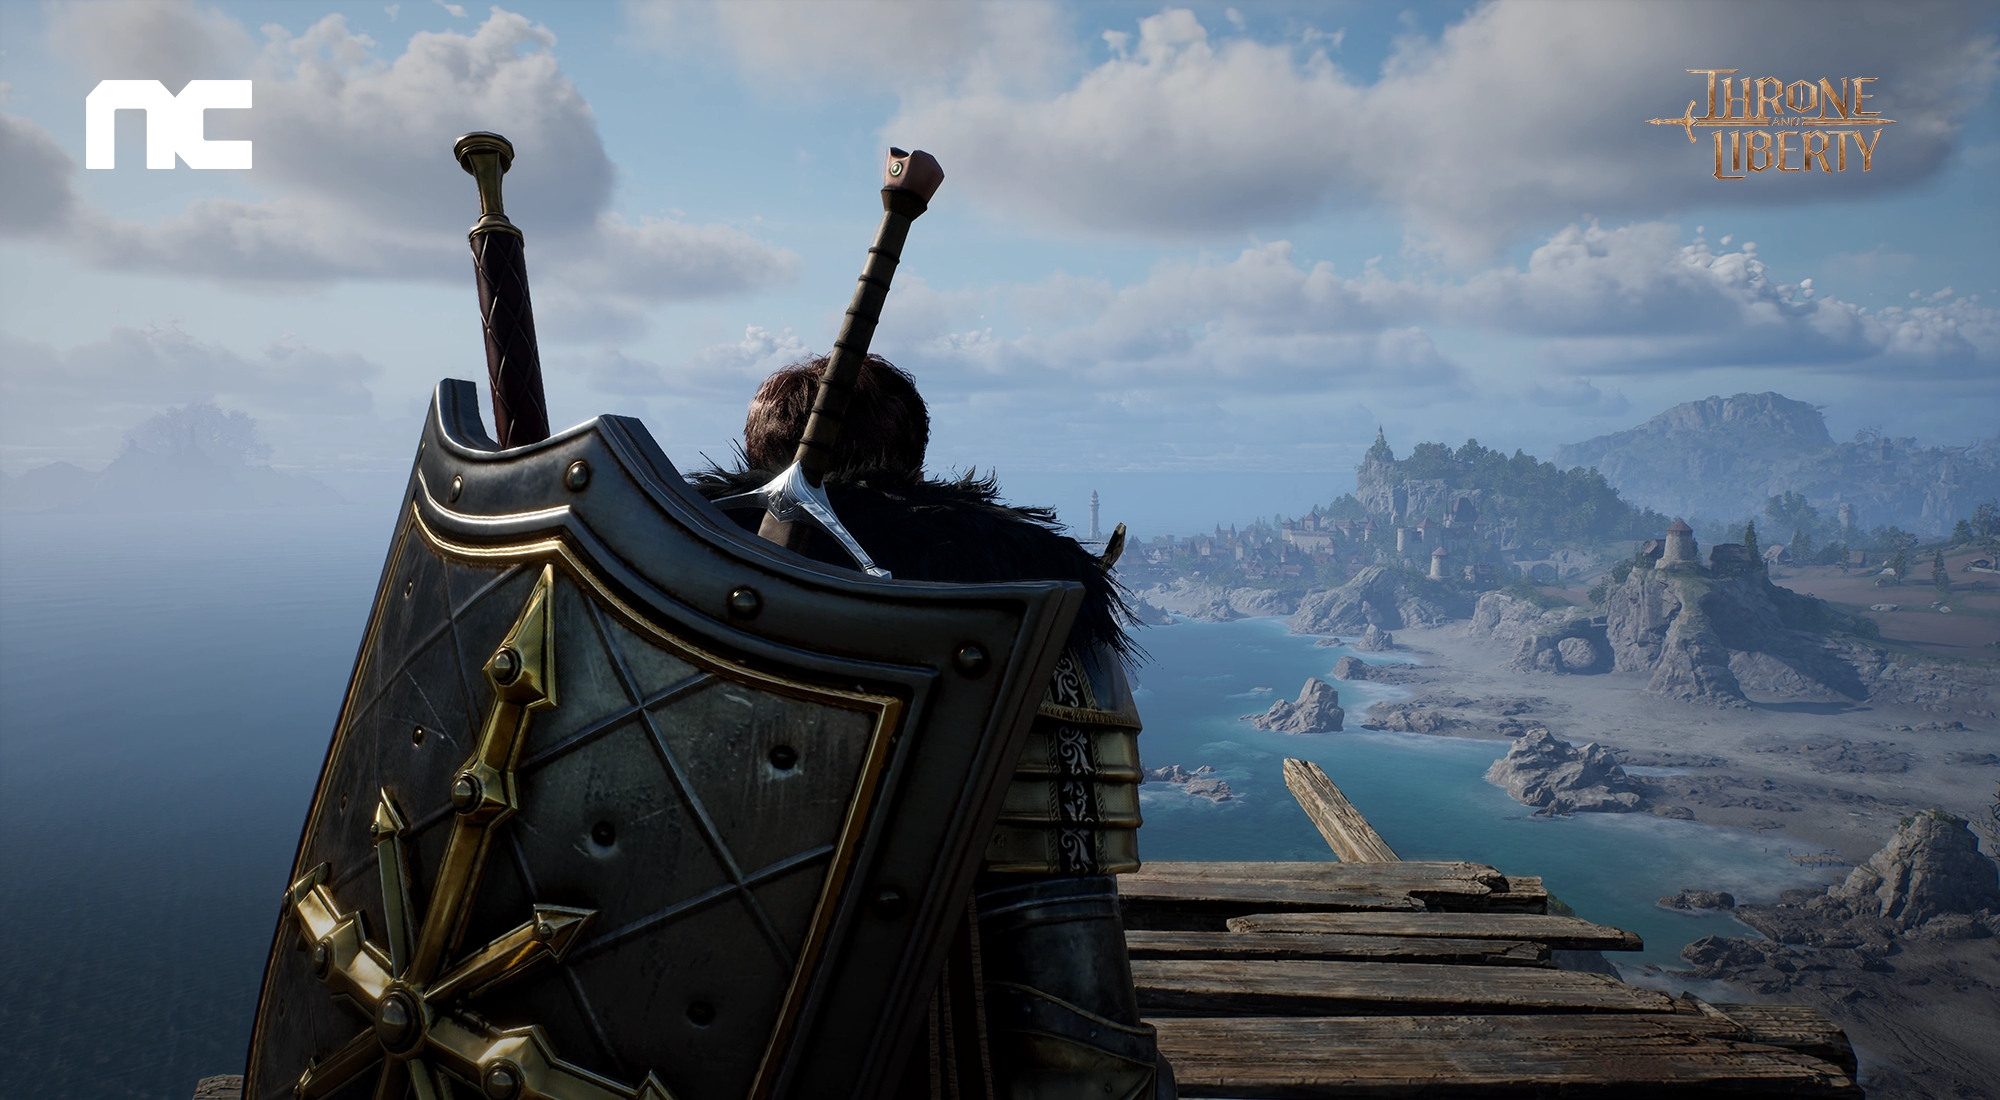 Throne and Liberty: fecha de lanzamiento, gameplay y requisitos